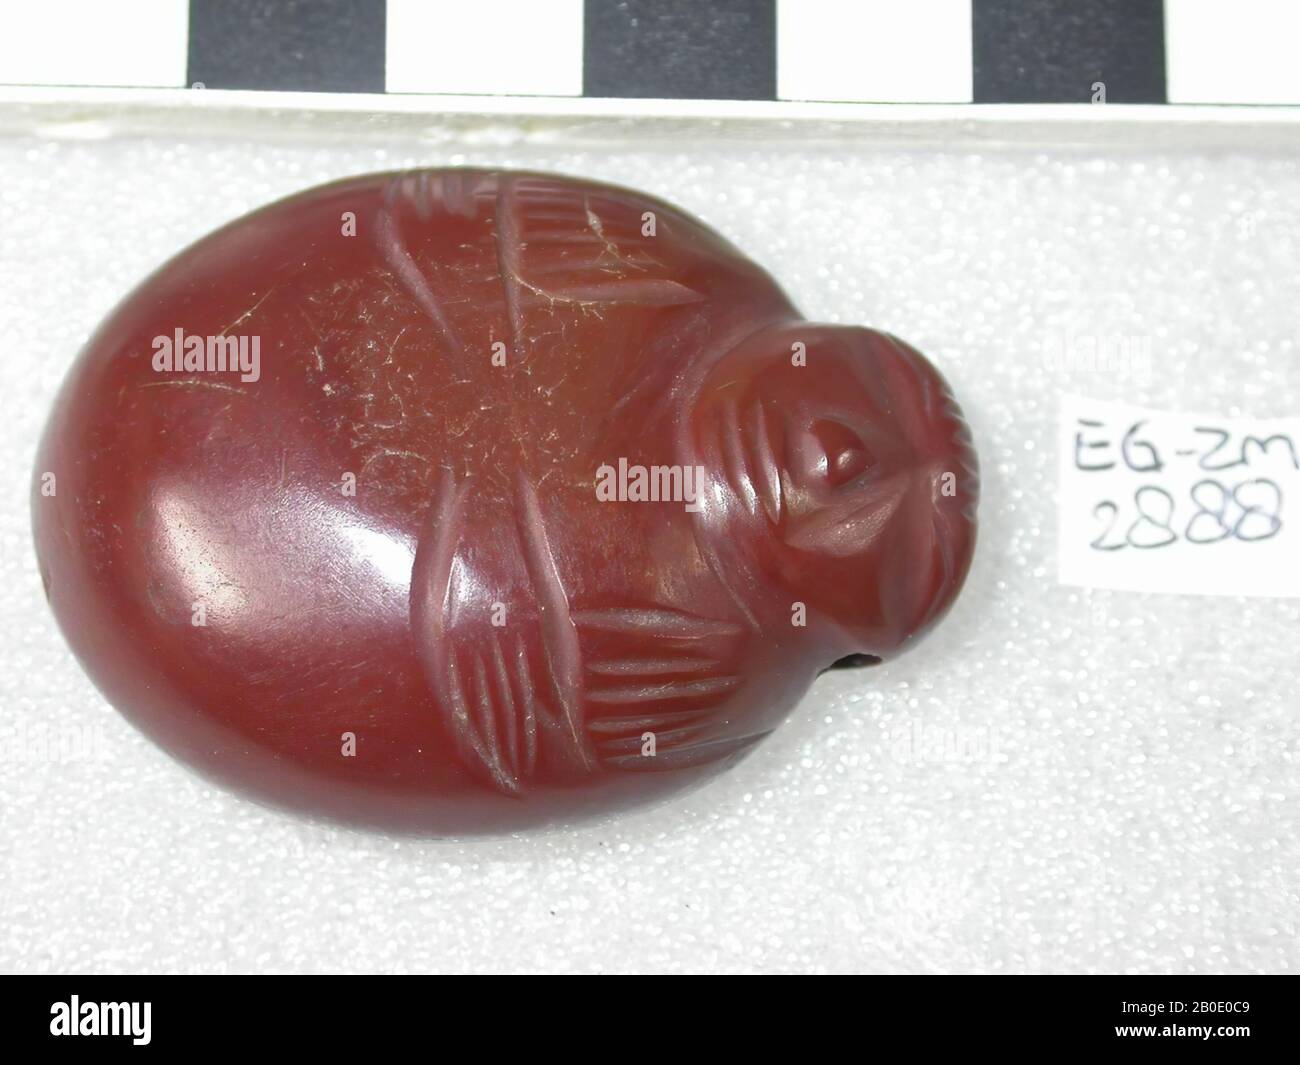 Egypte, amulet, objet, pierre, rouge, marron, 5,7 cm, emplacement, Egypte Banque D'Images